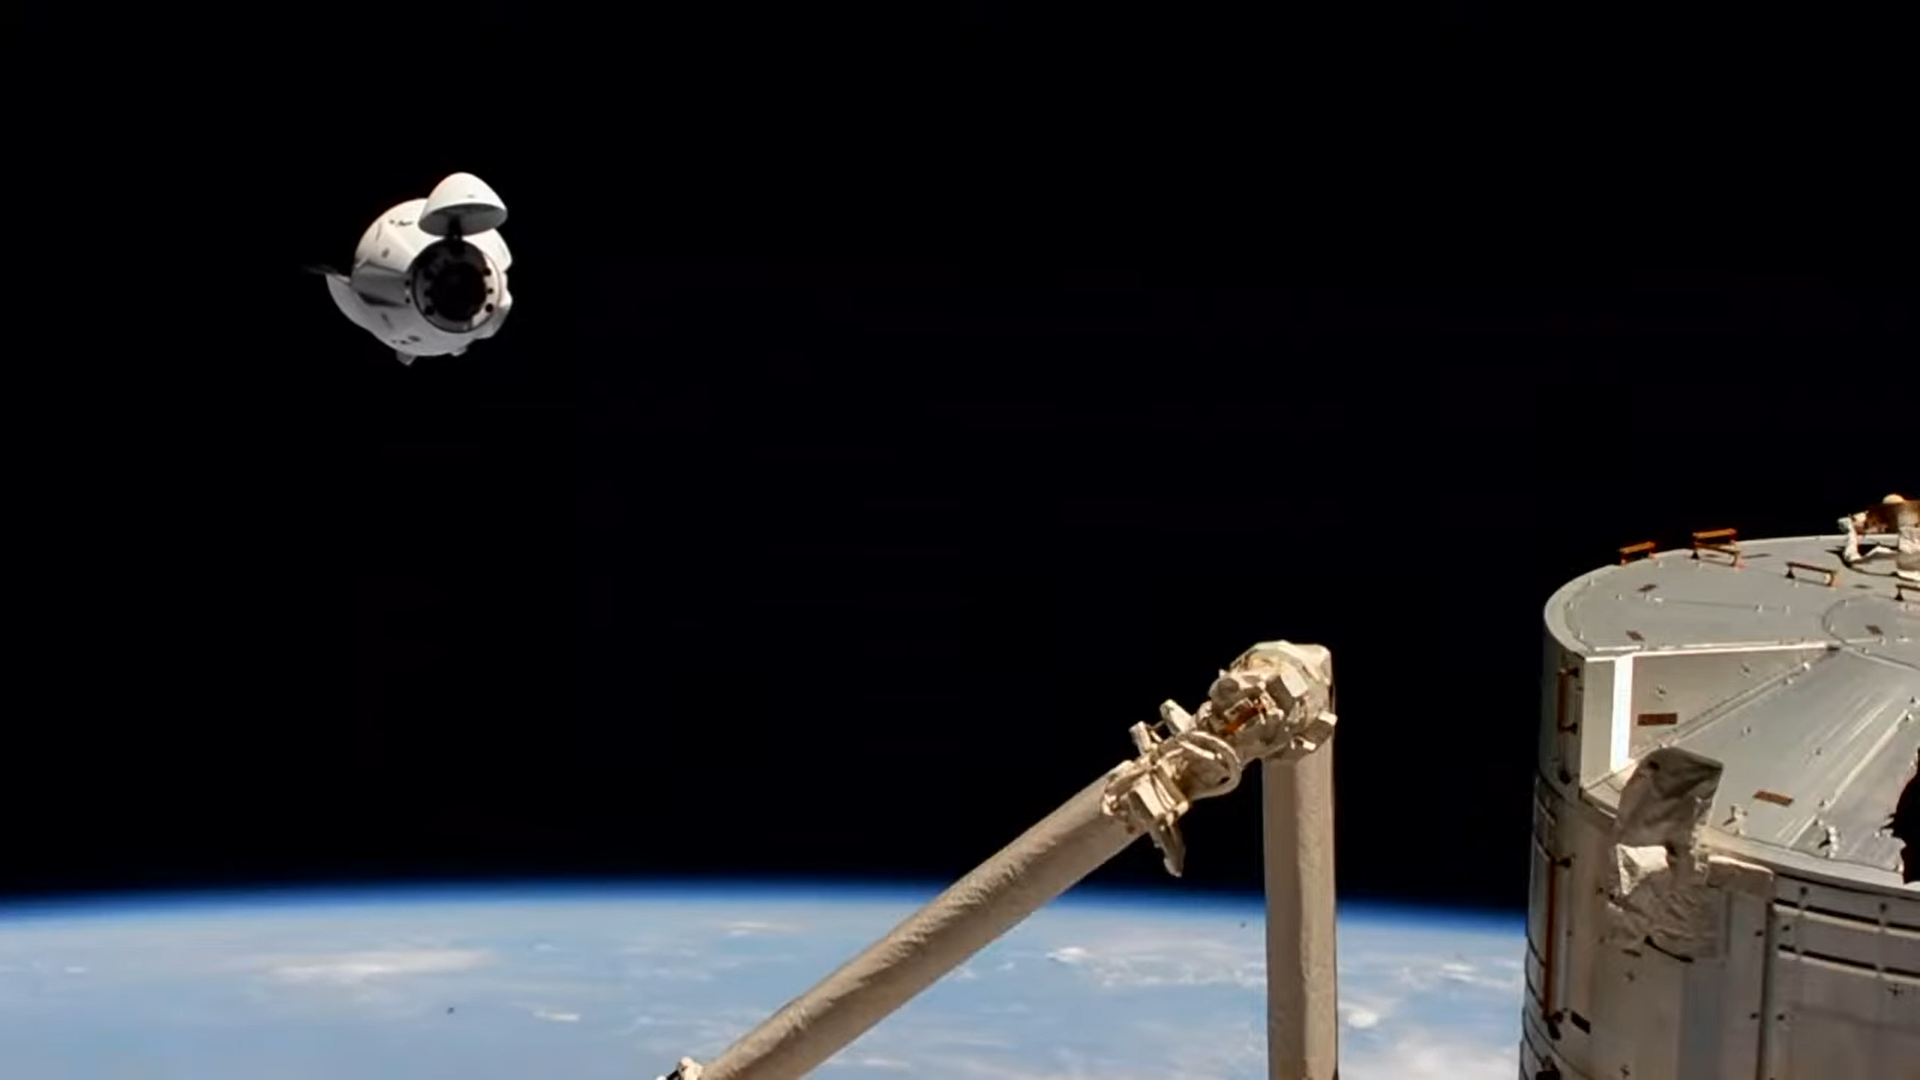 Dragon 2 Endeavour podczas zbliżania się do ISS (Źródło: SpaceX)